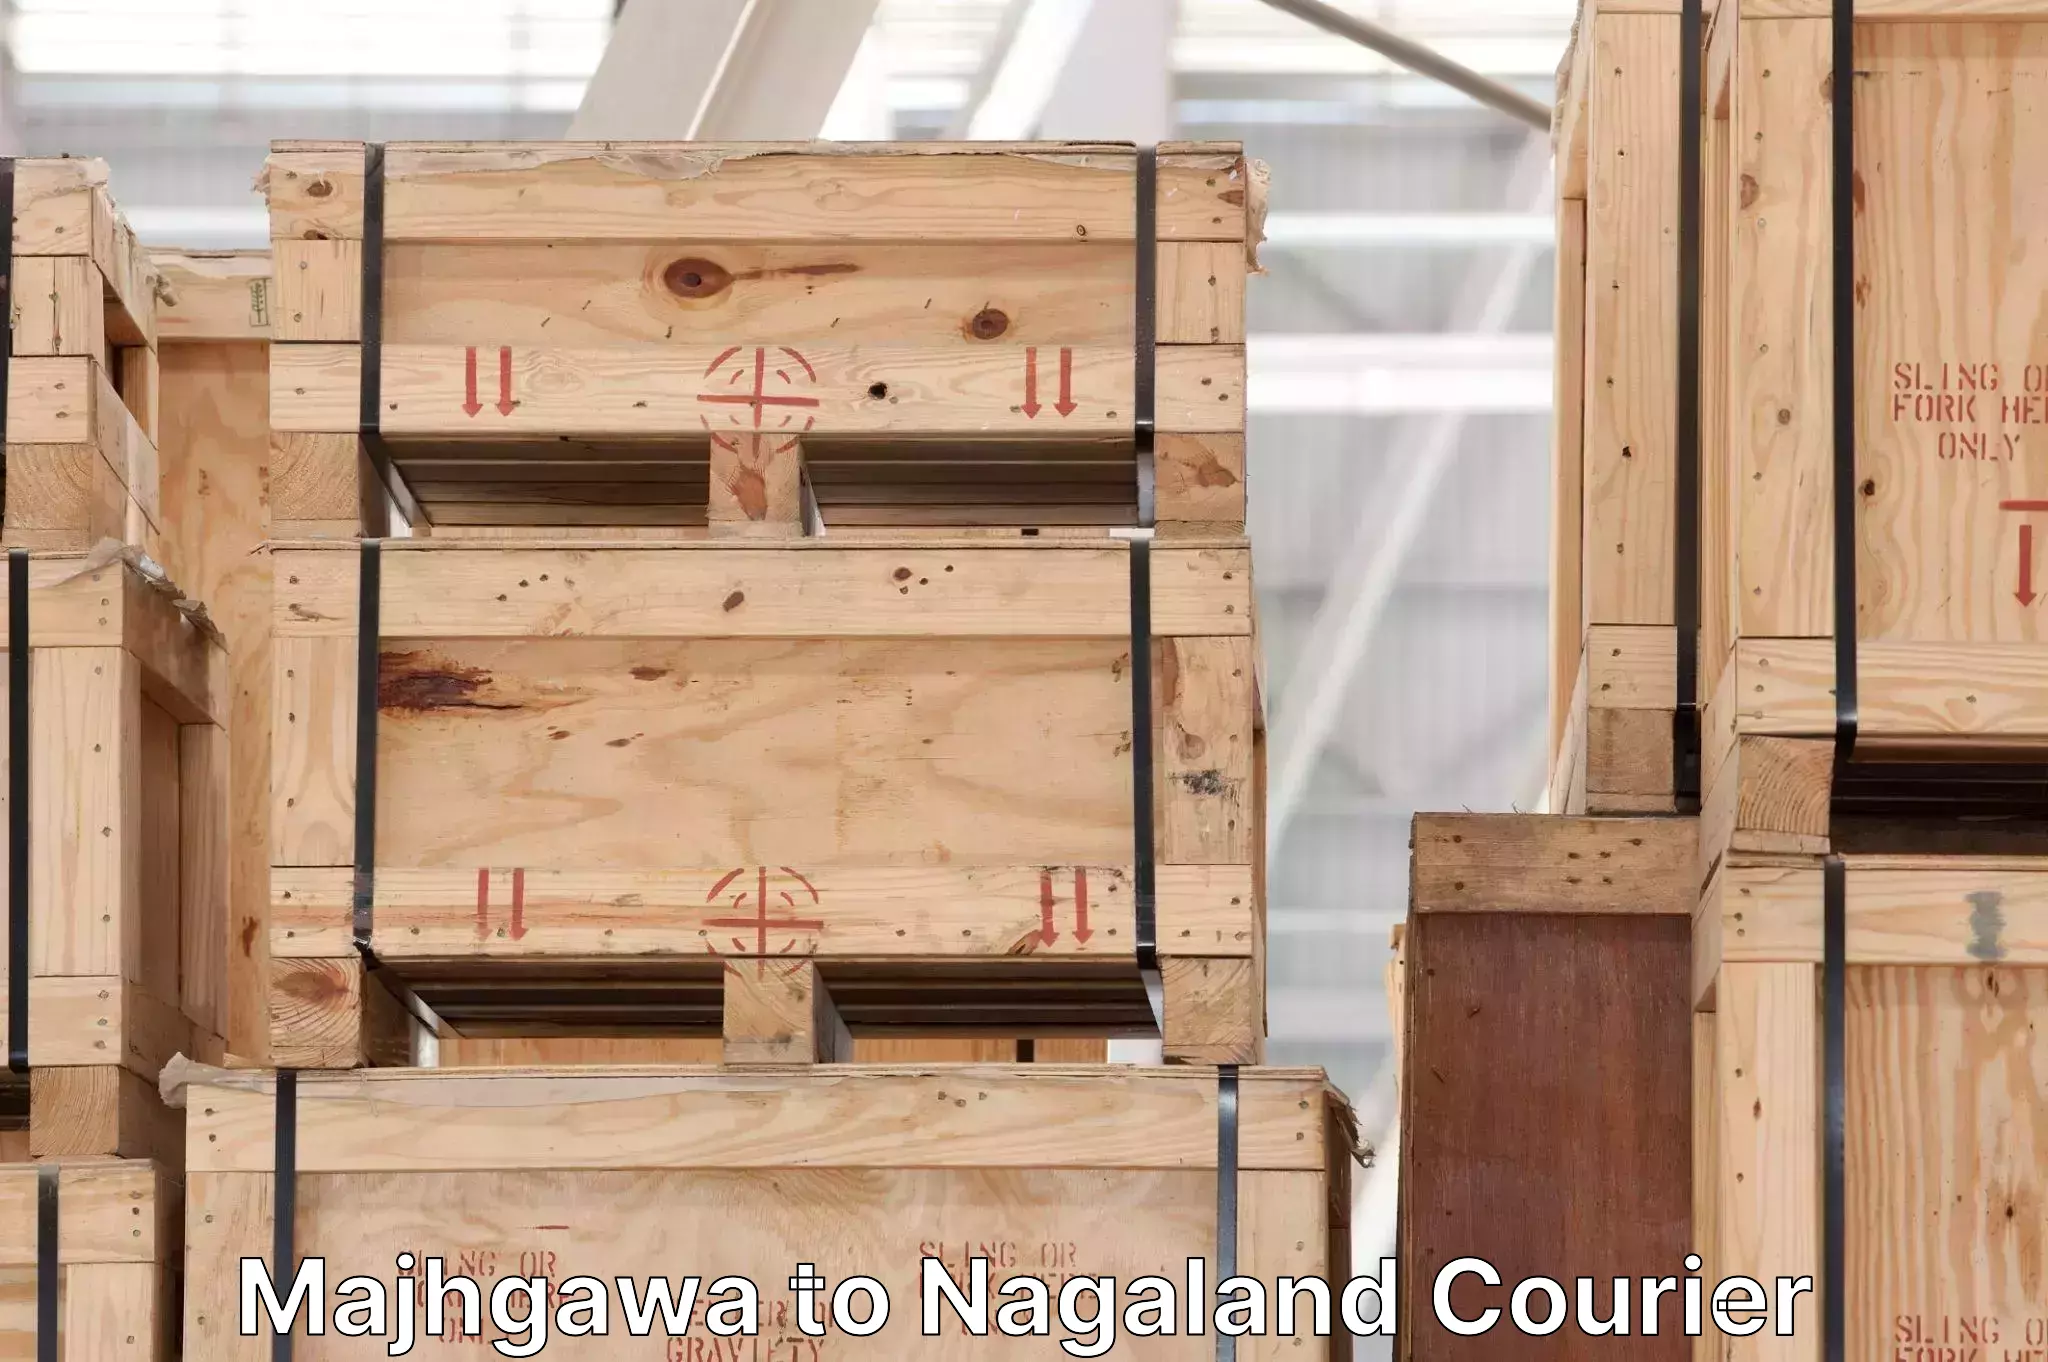 High-capacity parcel service Majhgawa to Nagaland